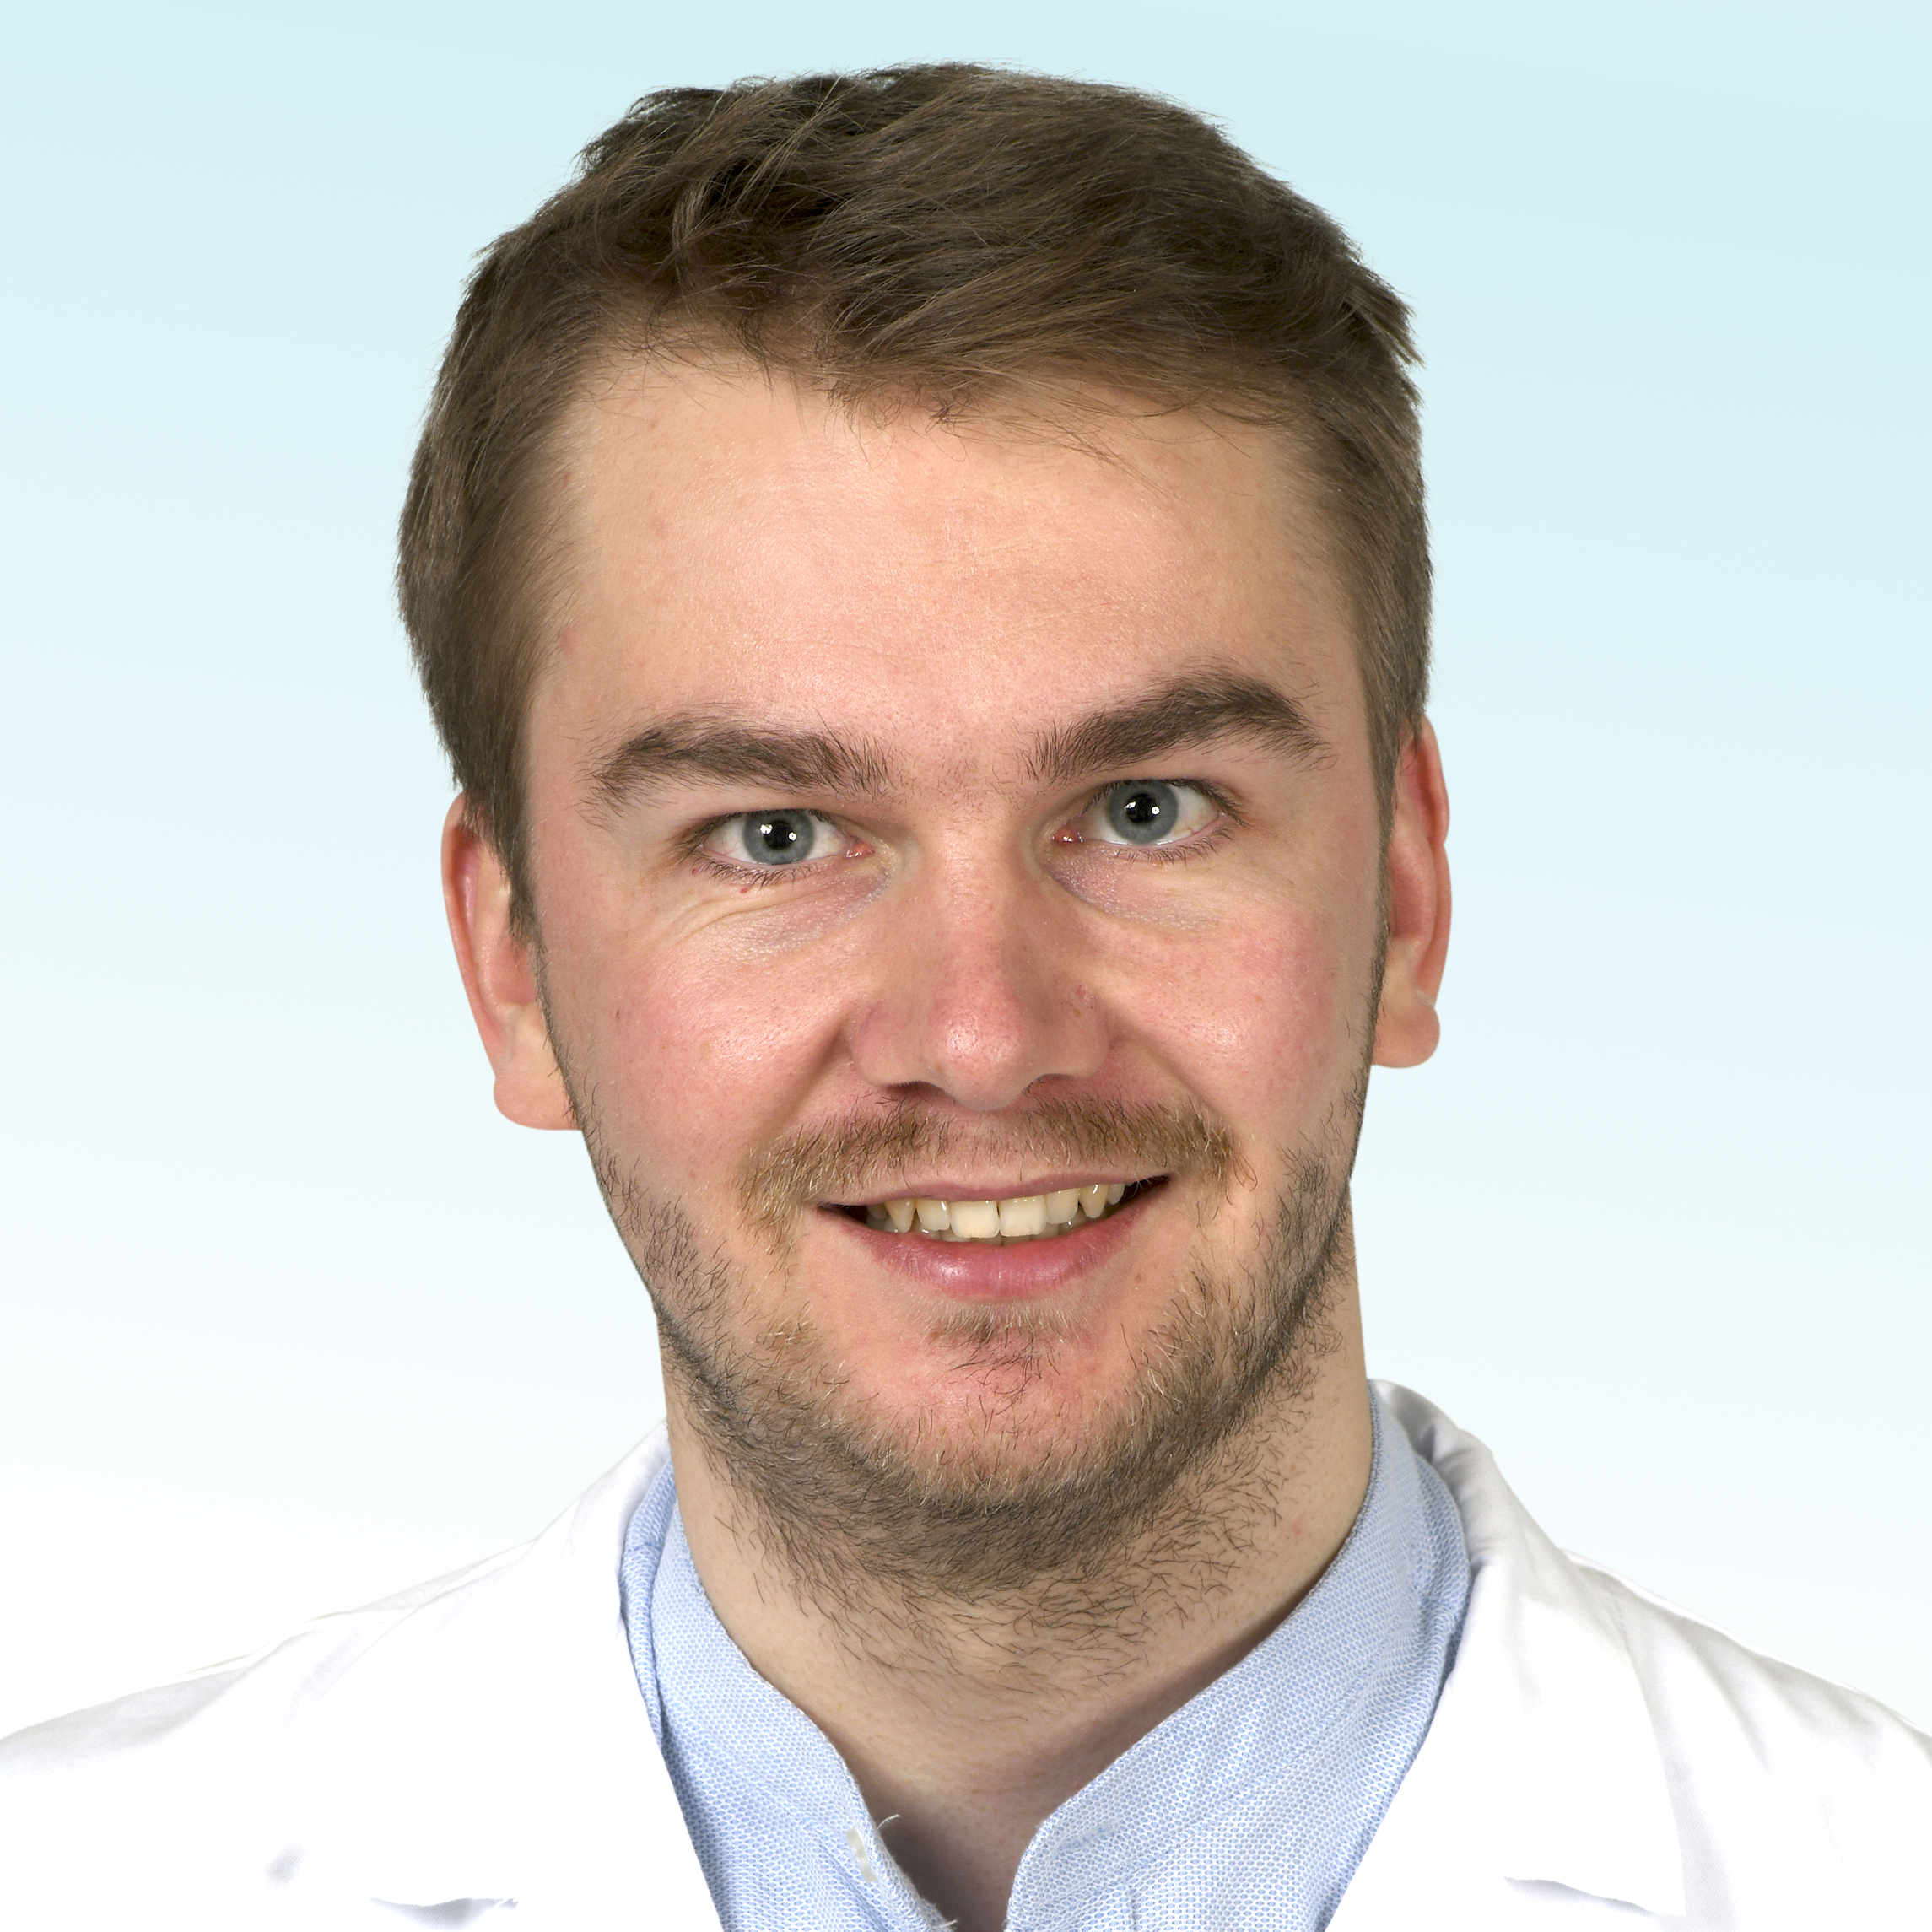 Dermatologo, Dr. med. Christian Greis